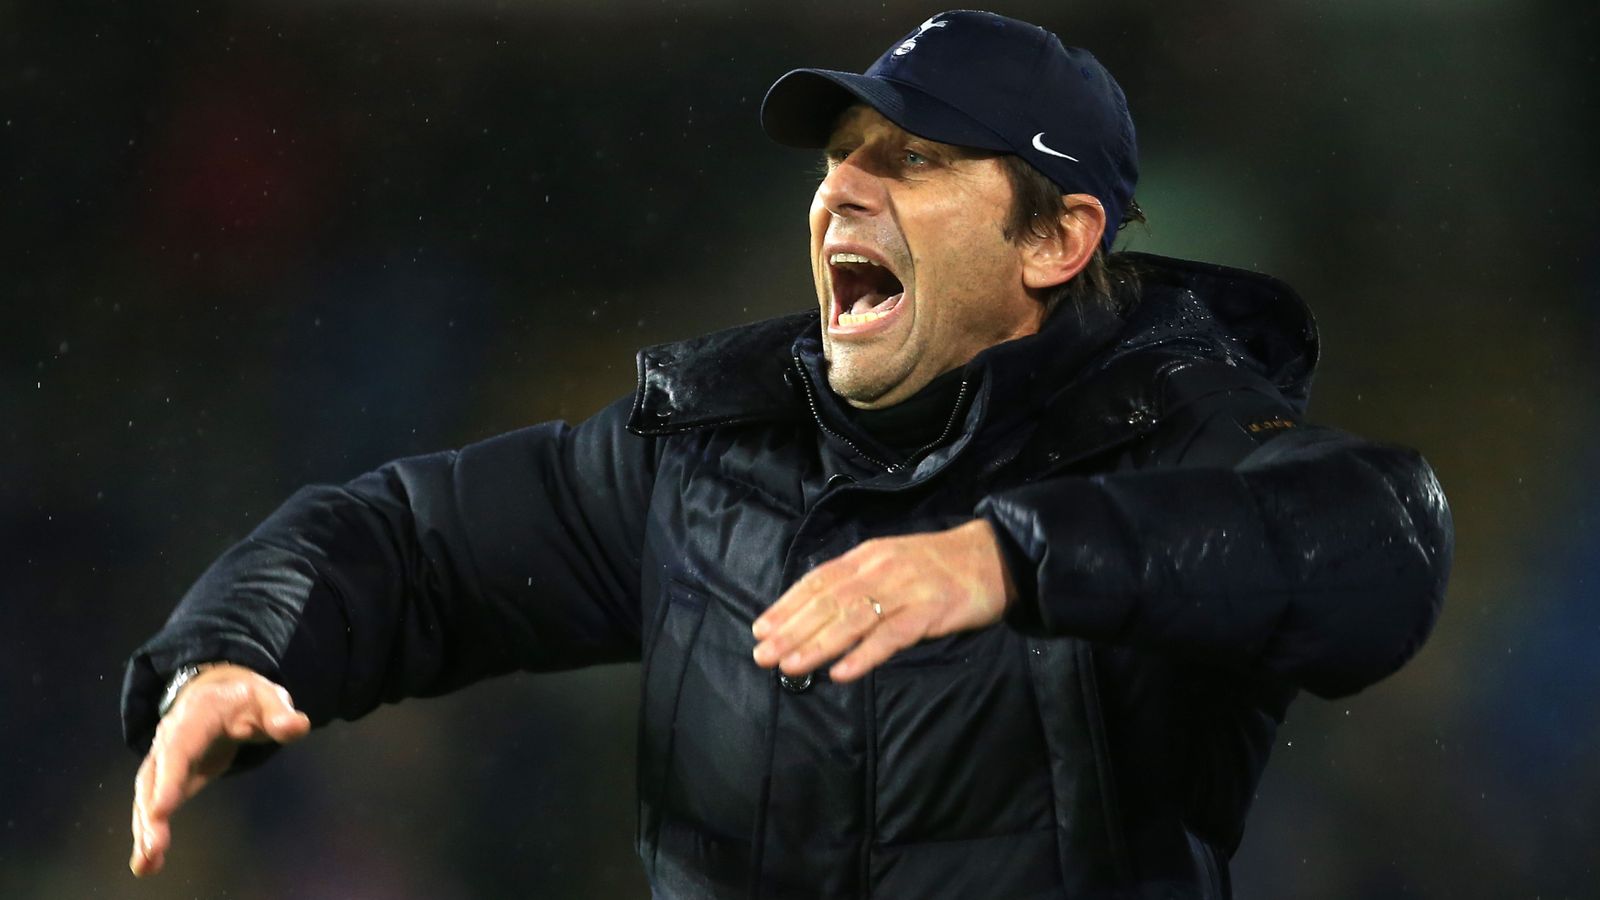 Antonio Conte on Tottenham's 'unacceptable' run: 'Club will have to assess me'